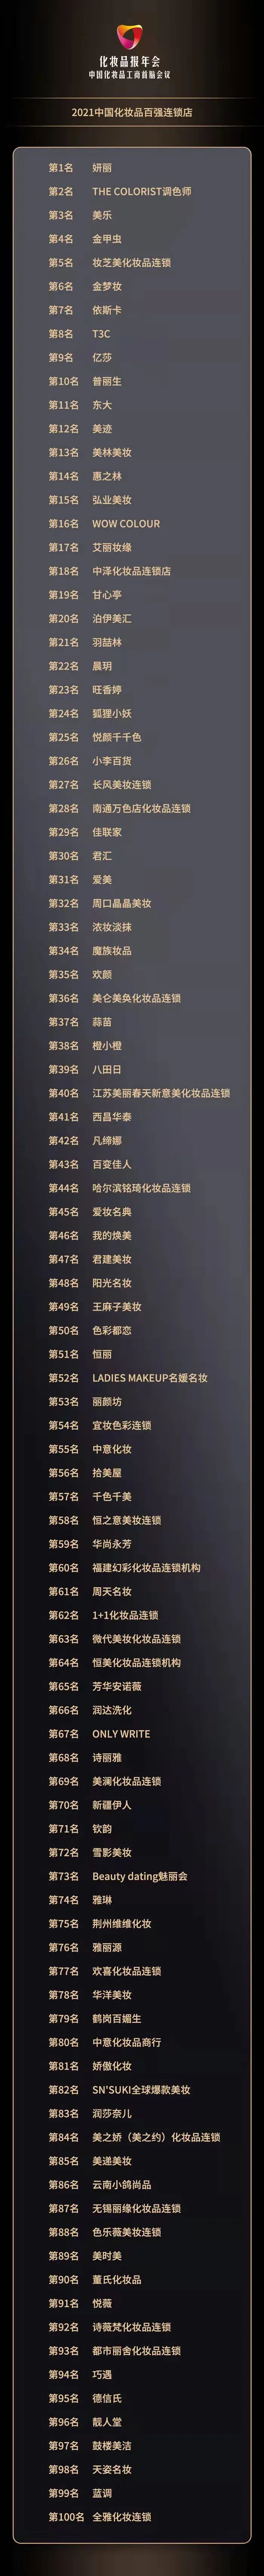 化妆品加盟什么品牌比较好2021中国化妆品百强连锁店排行榜